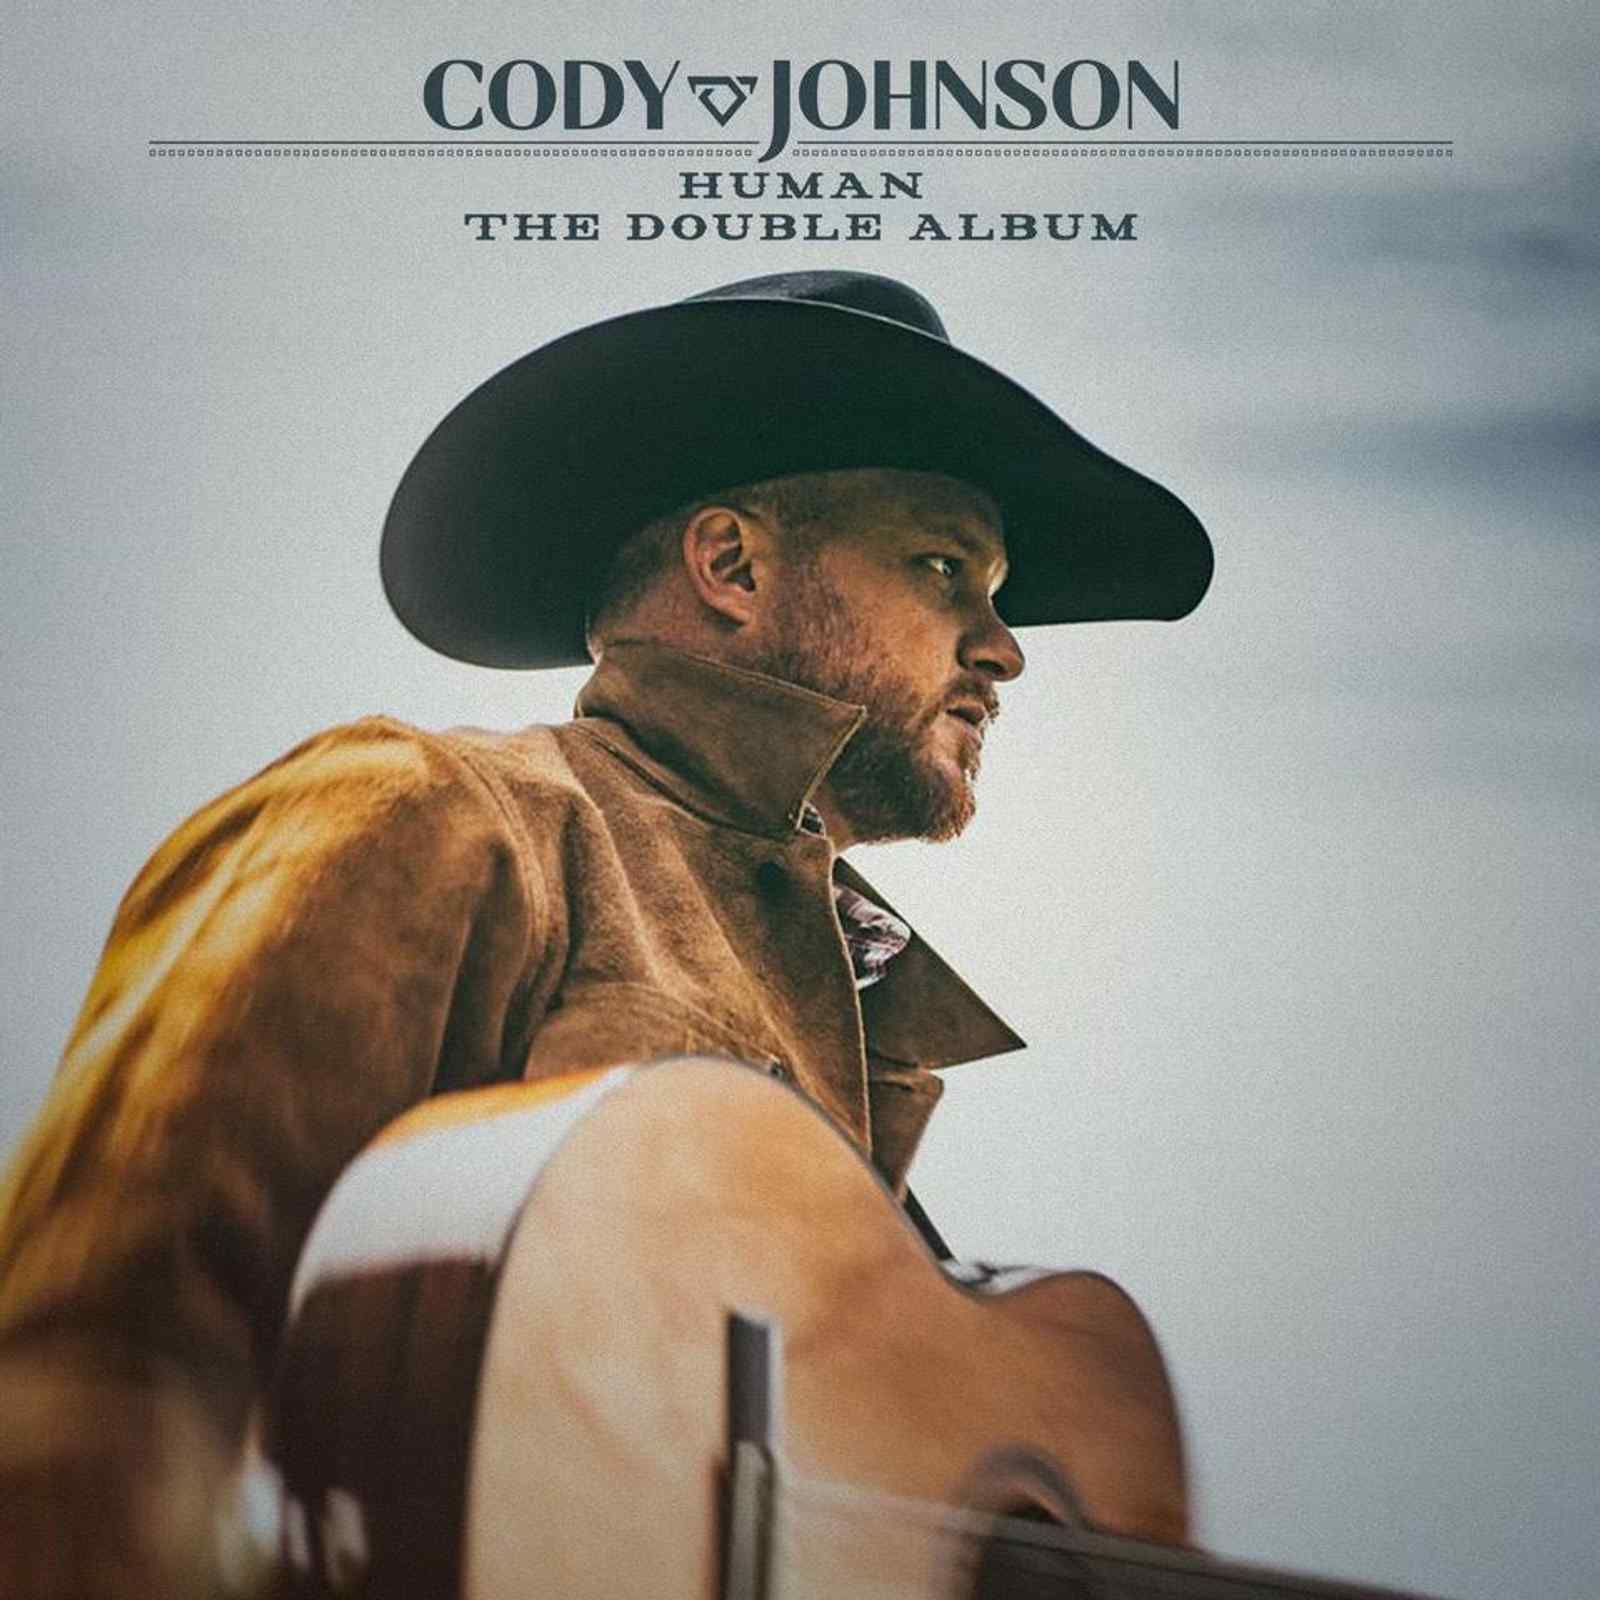 CODY JOHNSON ANNOUNCES HUMAN THE DOUBLE ALBUM, AVAILABLE EVERYWHERE DIGITALLY 10/8